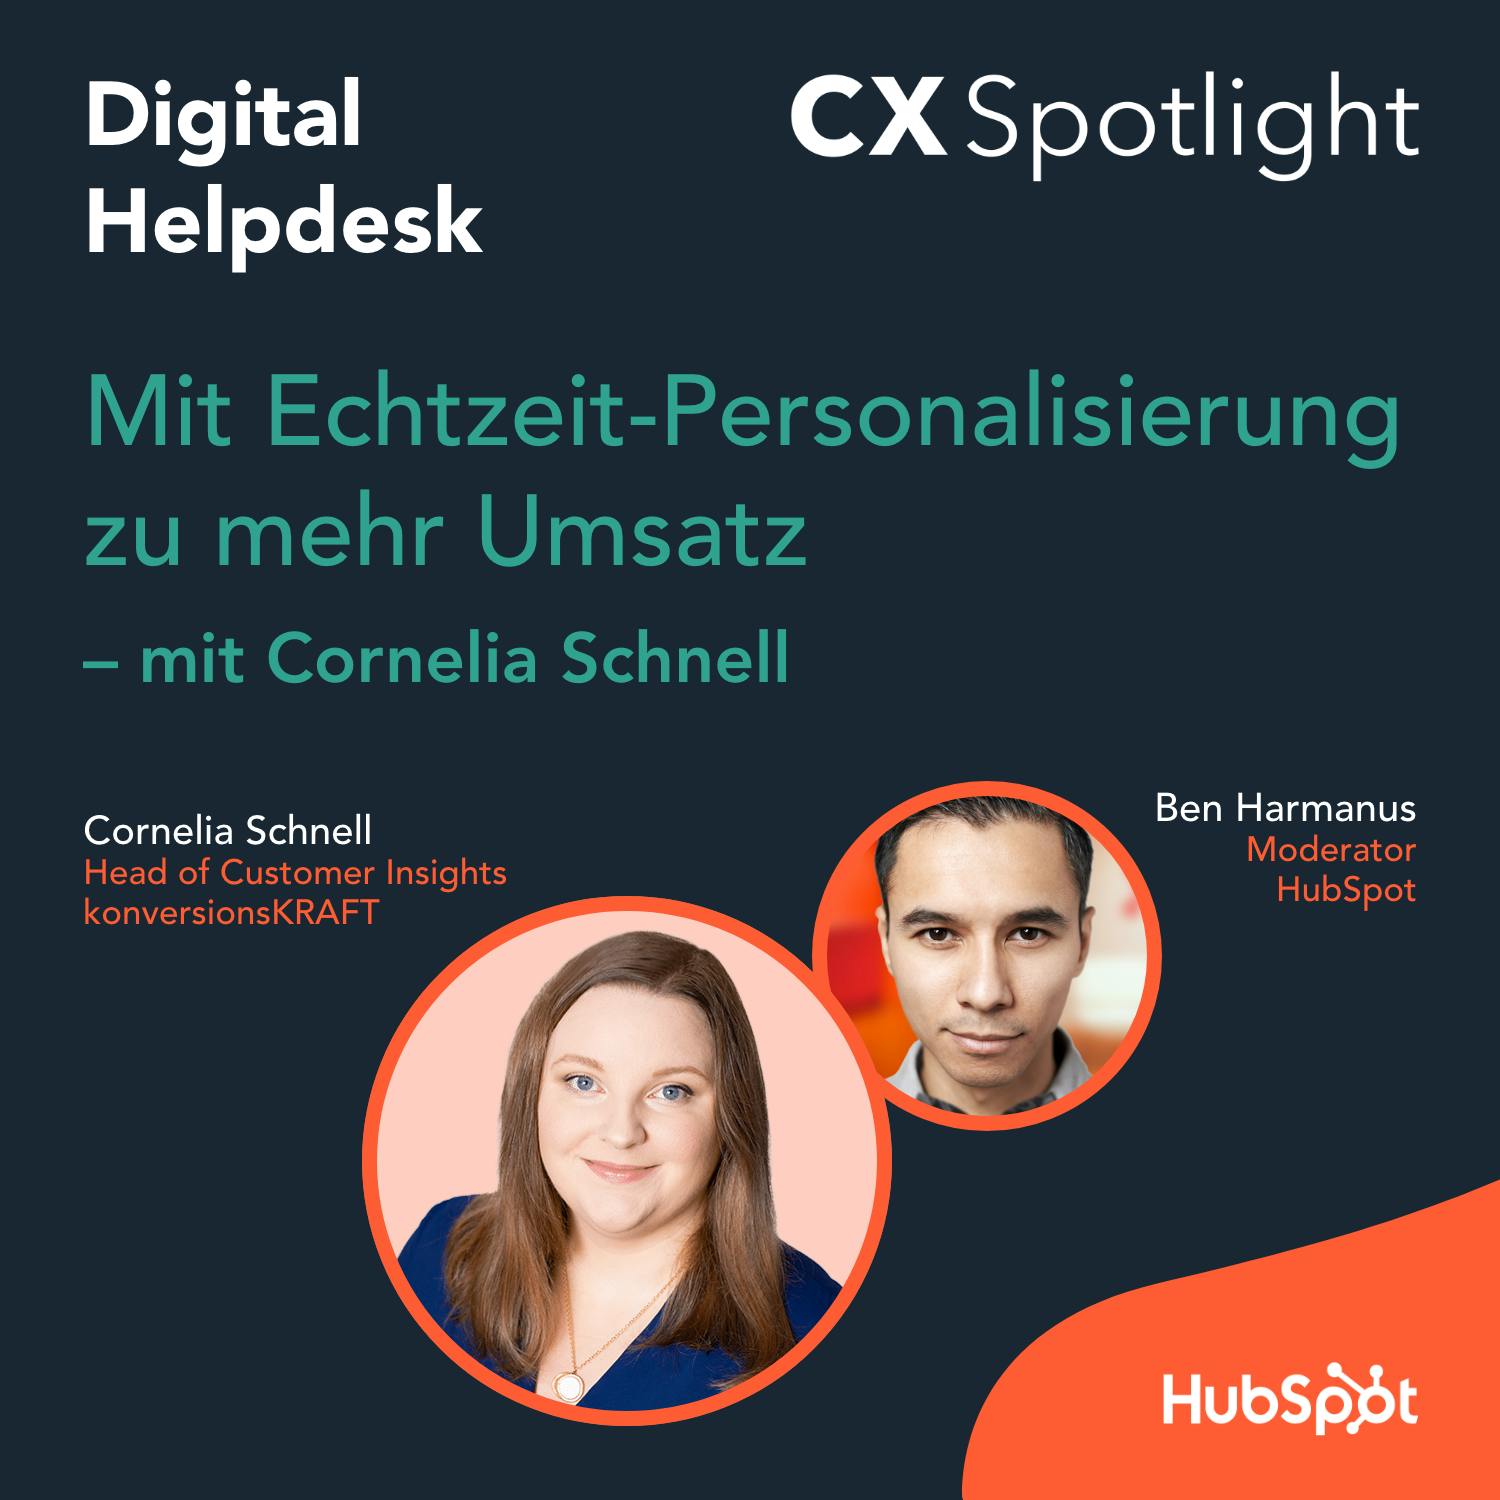 #135 CX Spotlight: Mit Echtzeit-Personalisierung zu mehr Umsatz mit Cornelia Schnell von konversionskRAFT